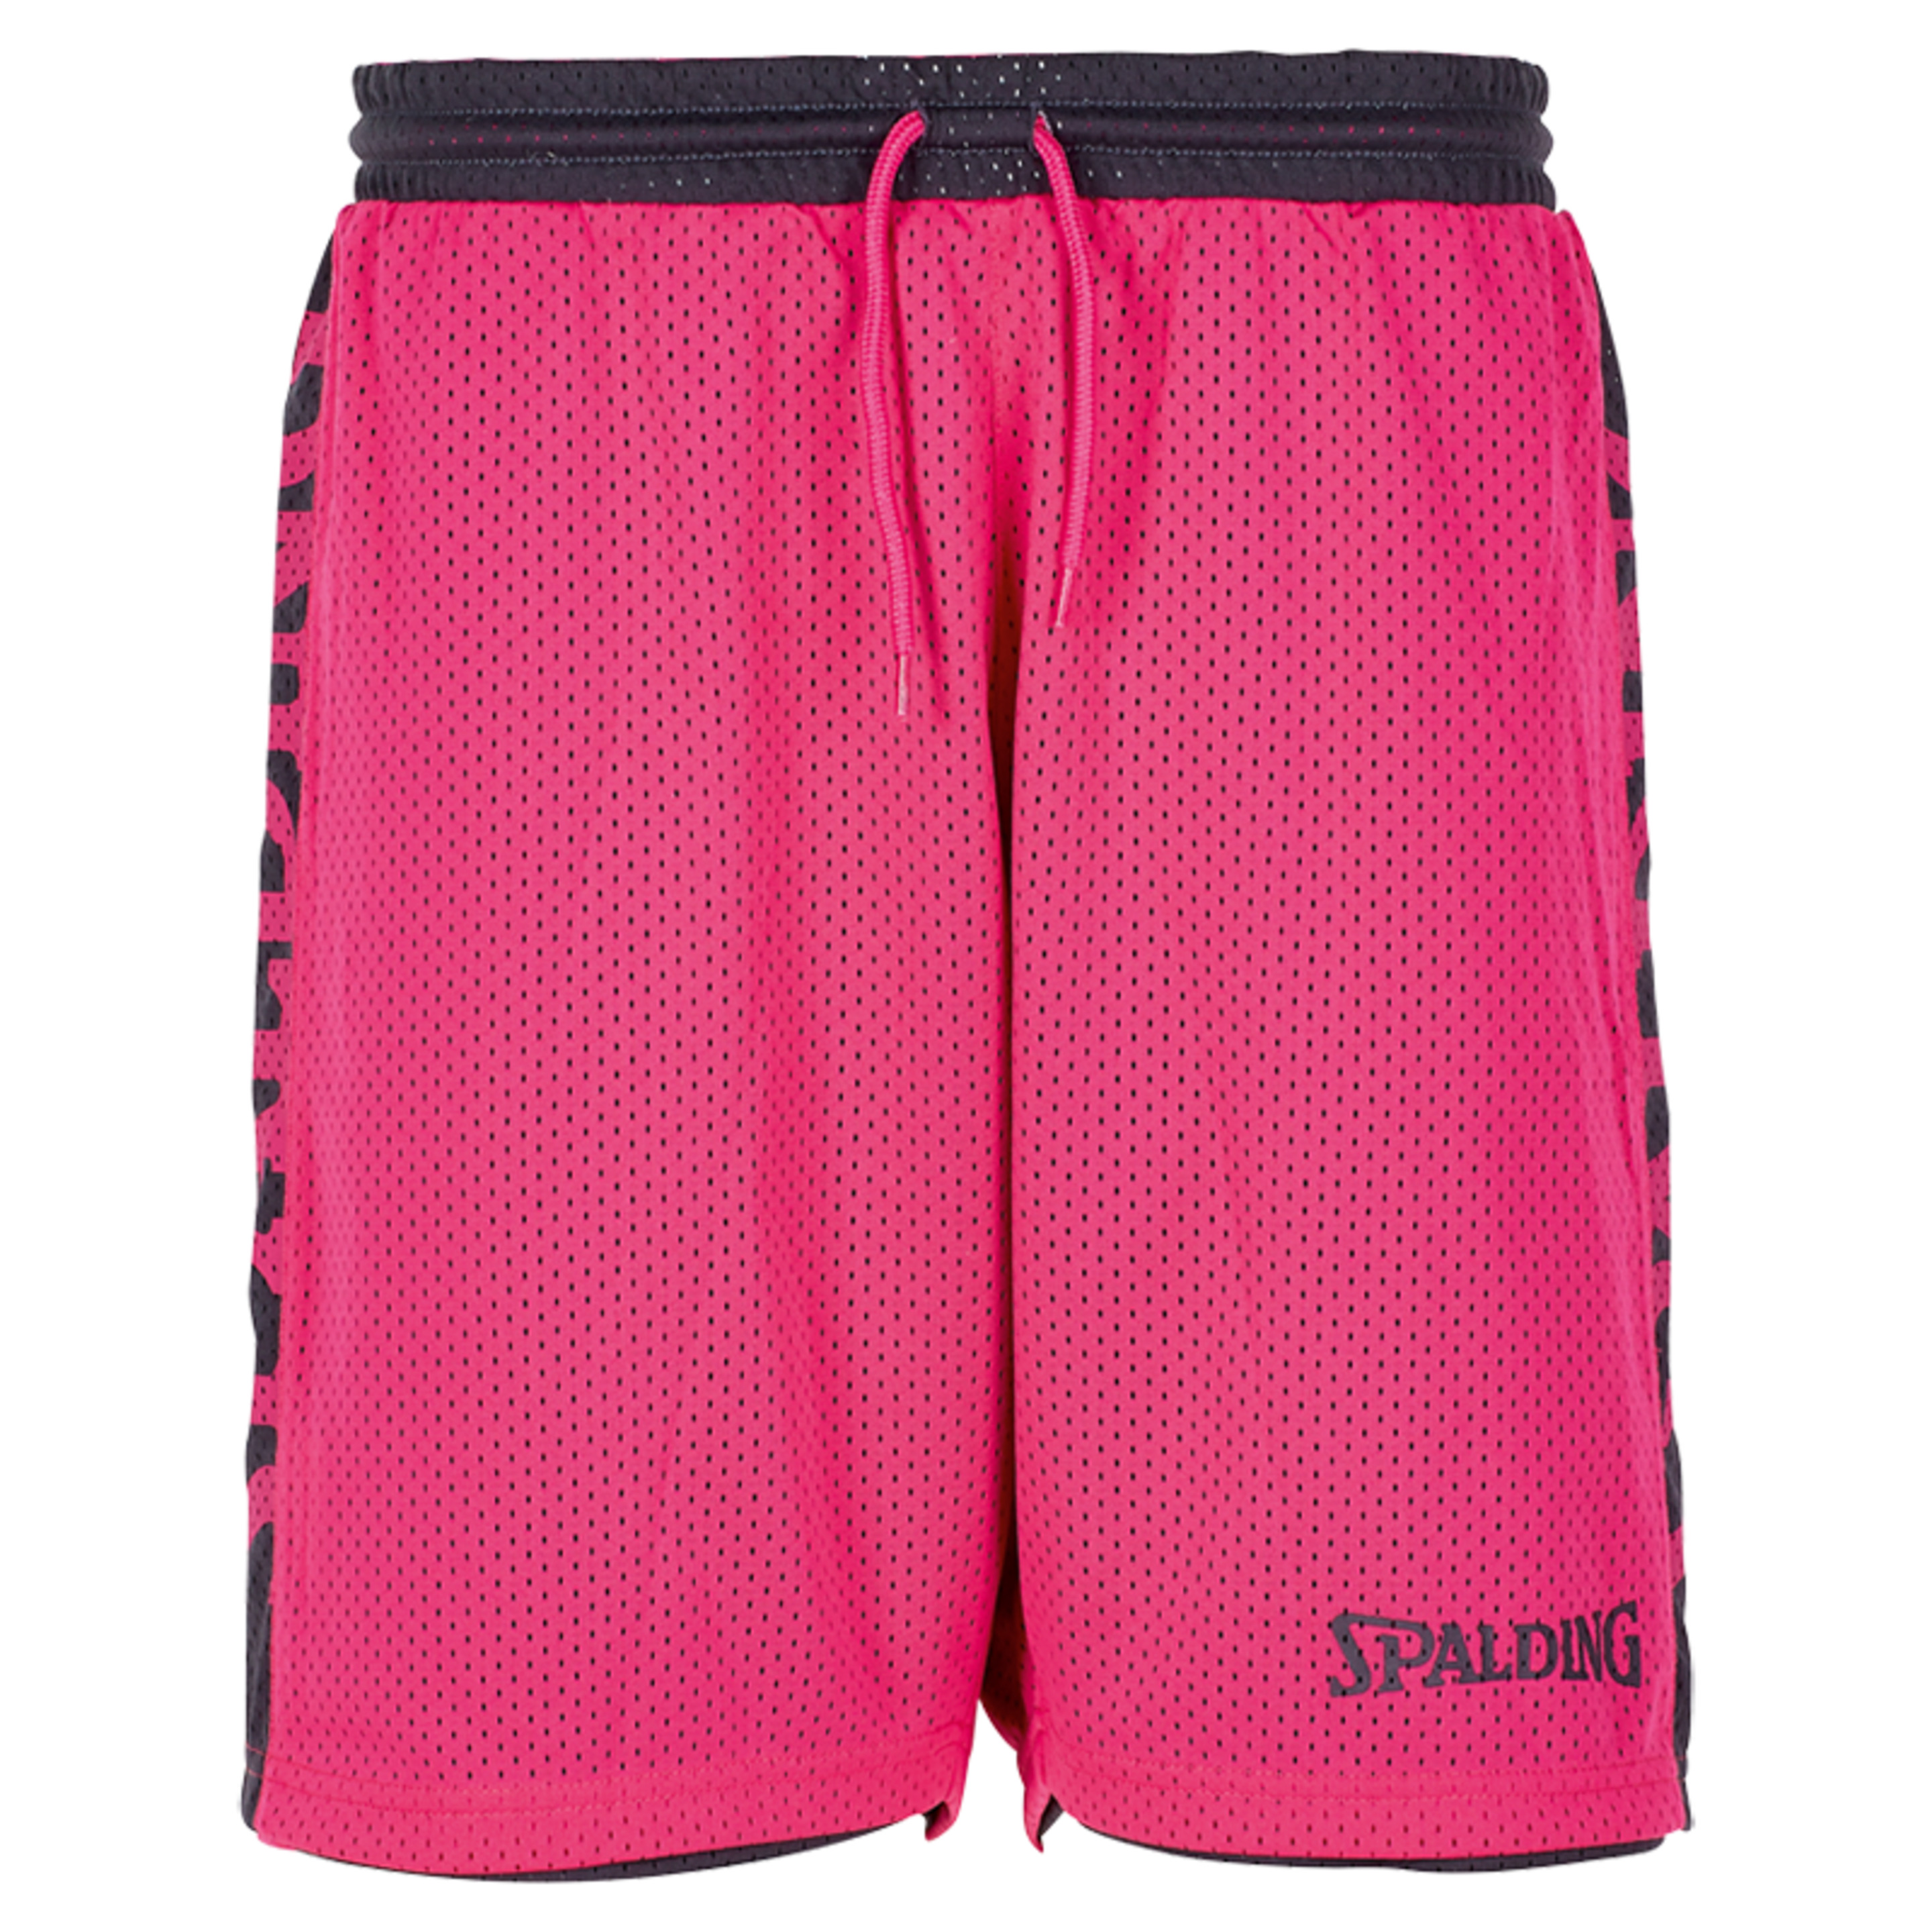 Essential Reversible Shorts 4her Black Spalding - gris_oscuro - Pantalón Corto De Baloncesto Essential Reversible Shorts 4her  MKP